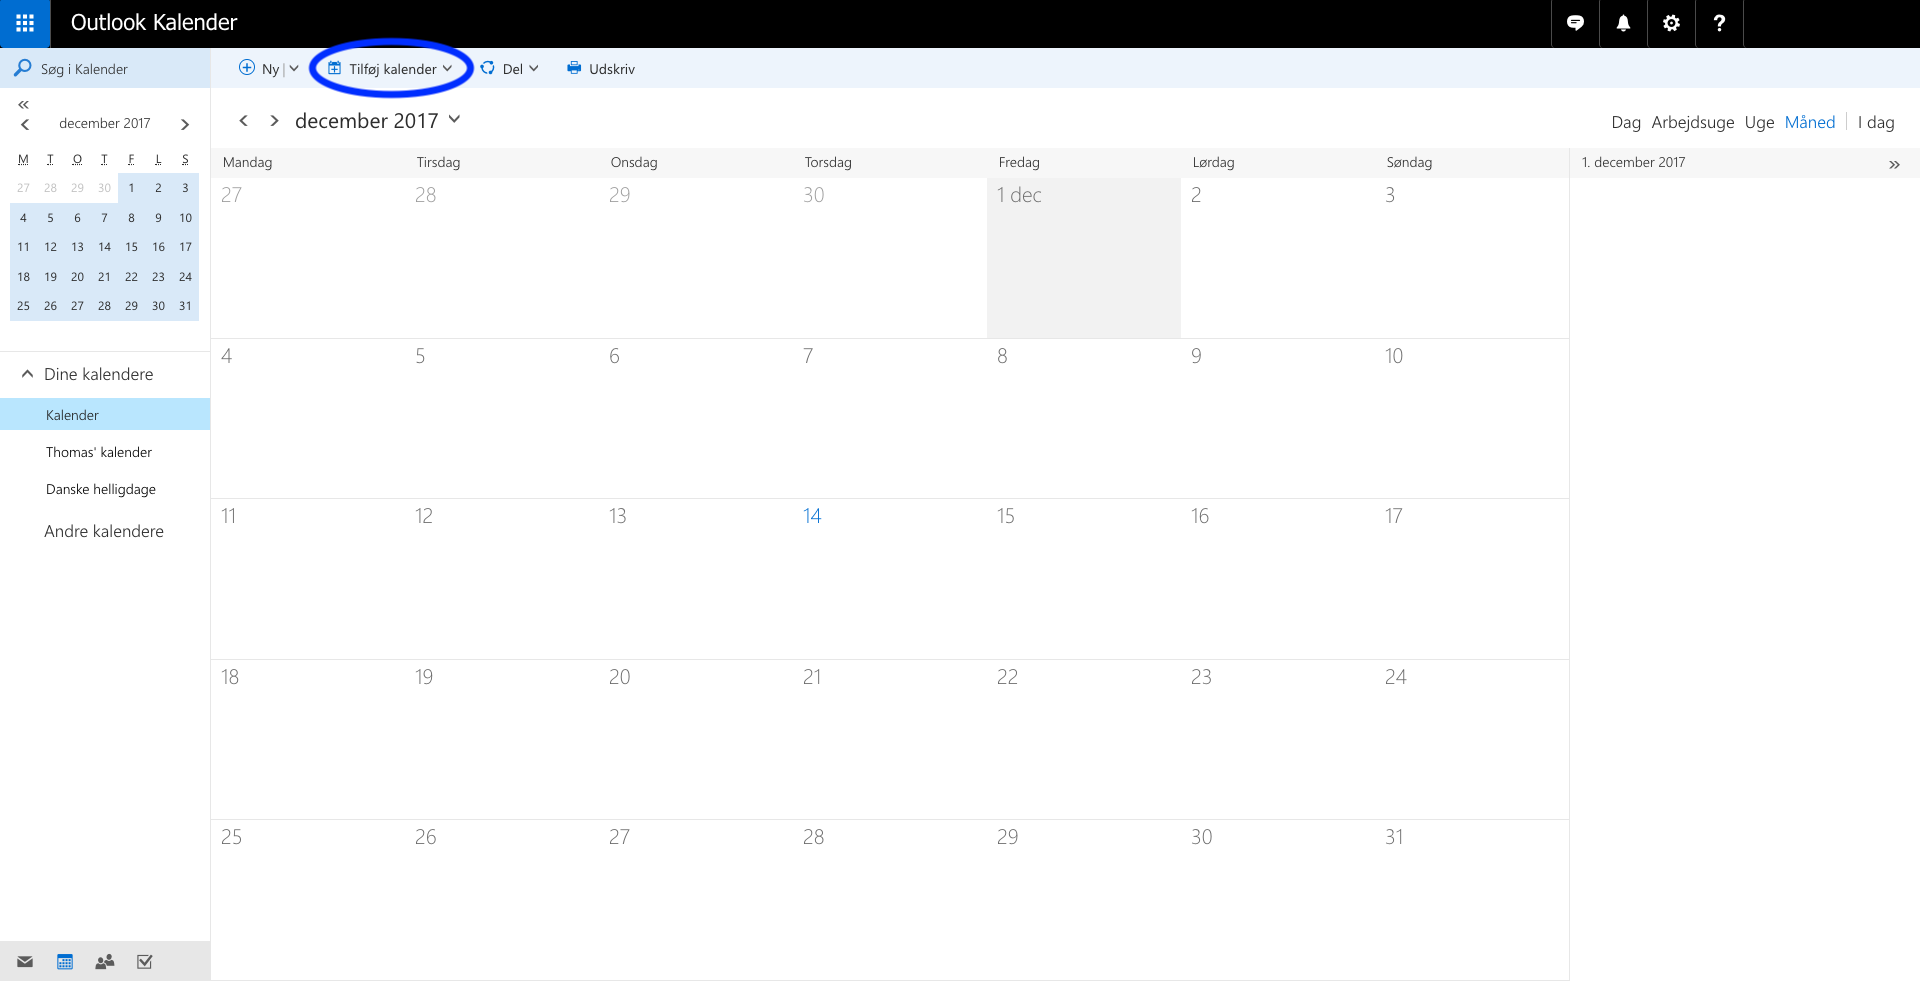 Hvordan synkroniserer jeg kalenderen med min egen?